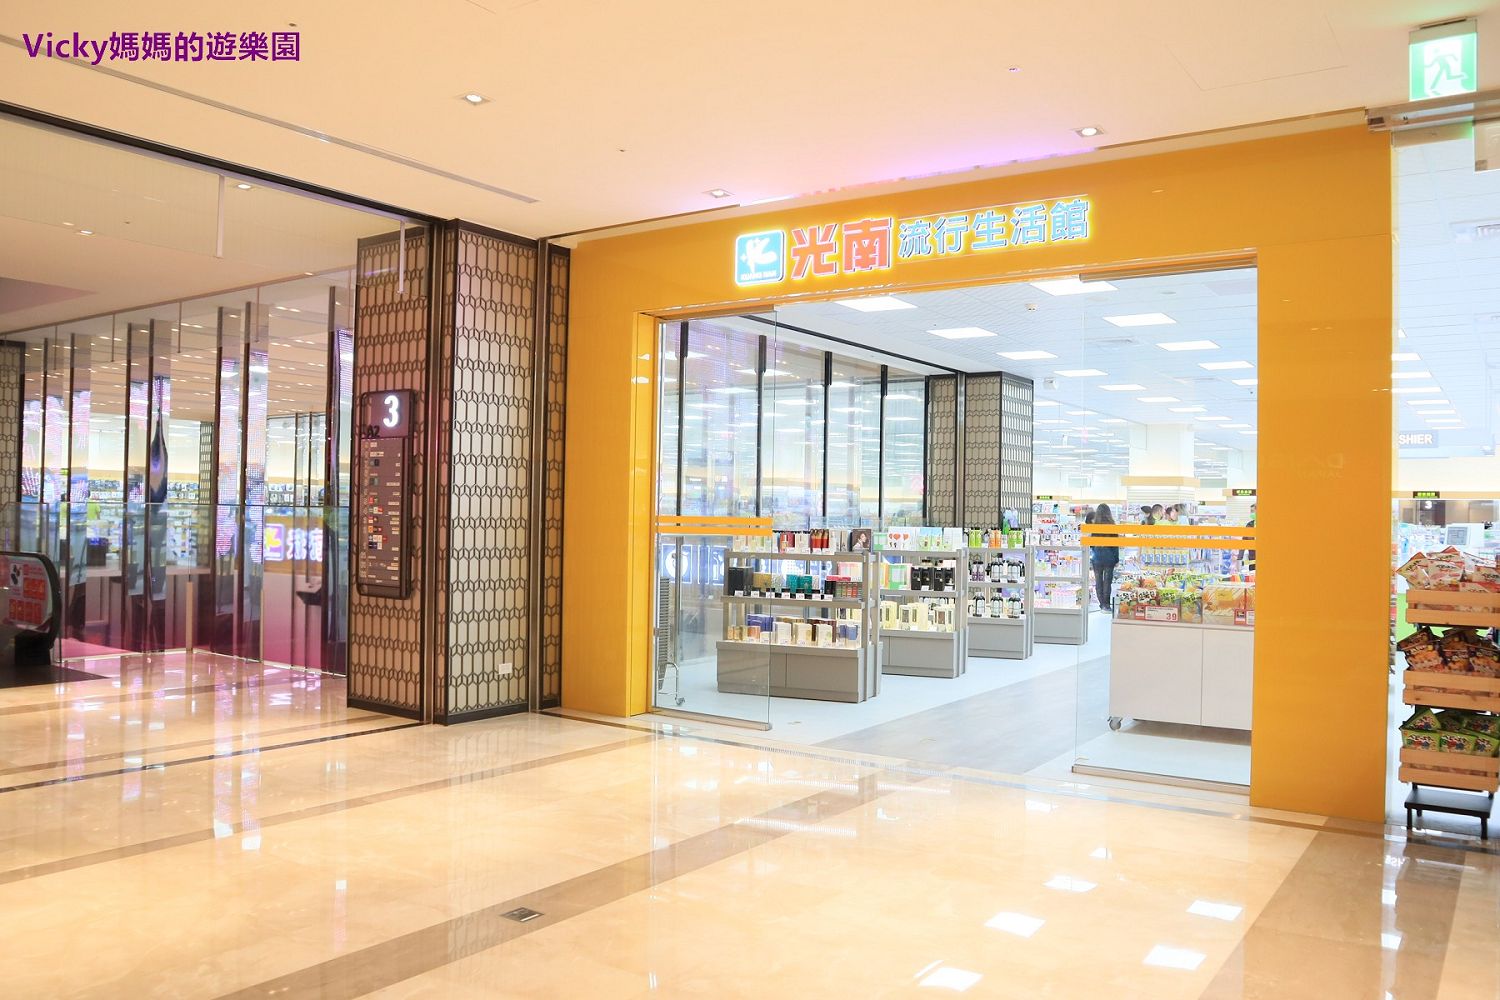 台南購物︱光南流行生活館南紡門市：來這邊買療癒、買快樂、買創意、買親子時光，是適合全家大小購物的好所在